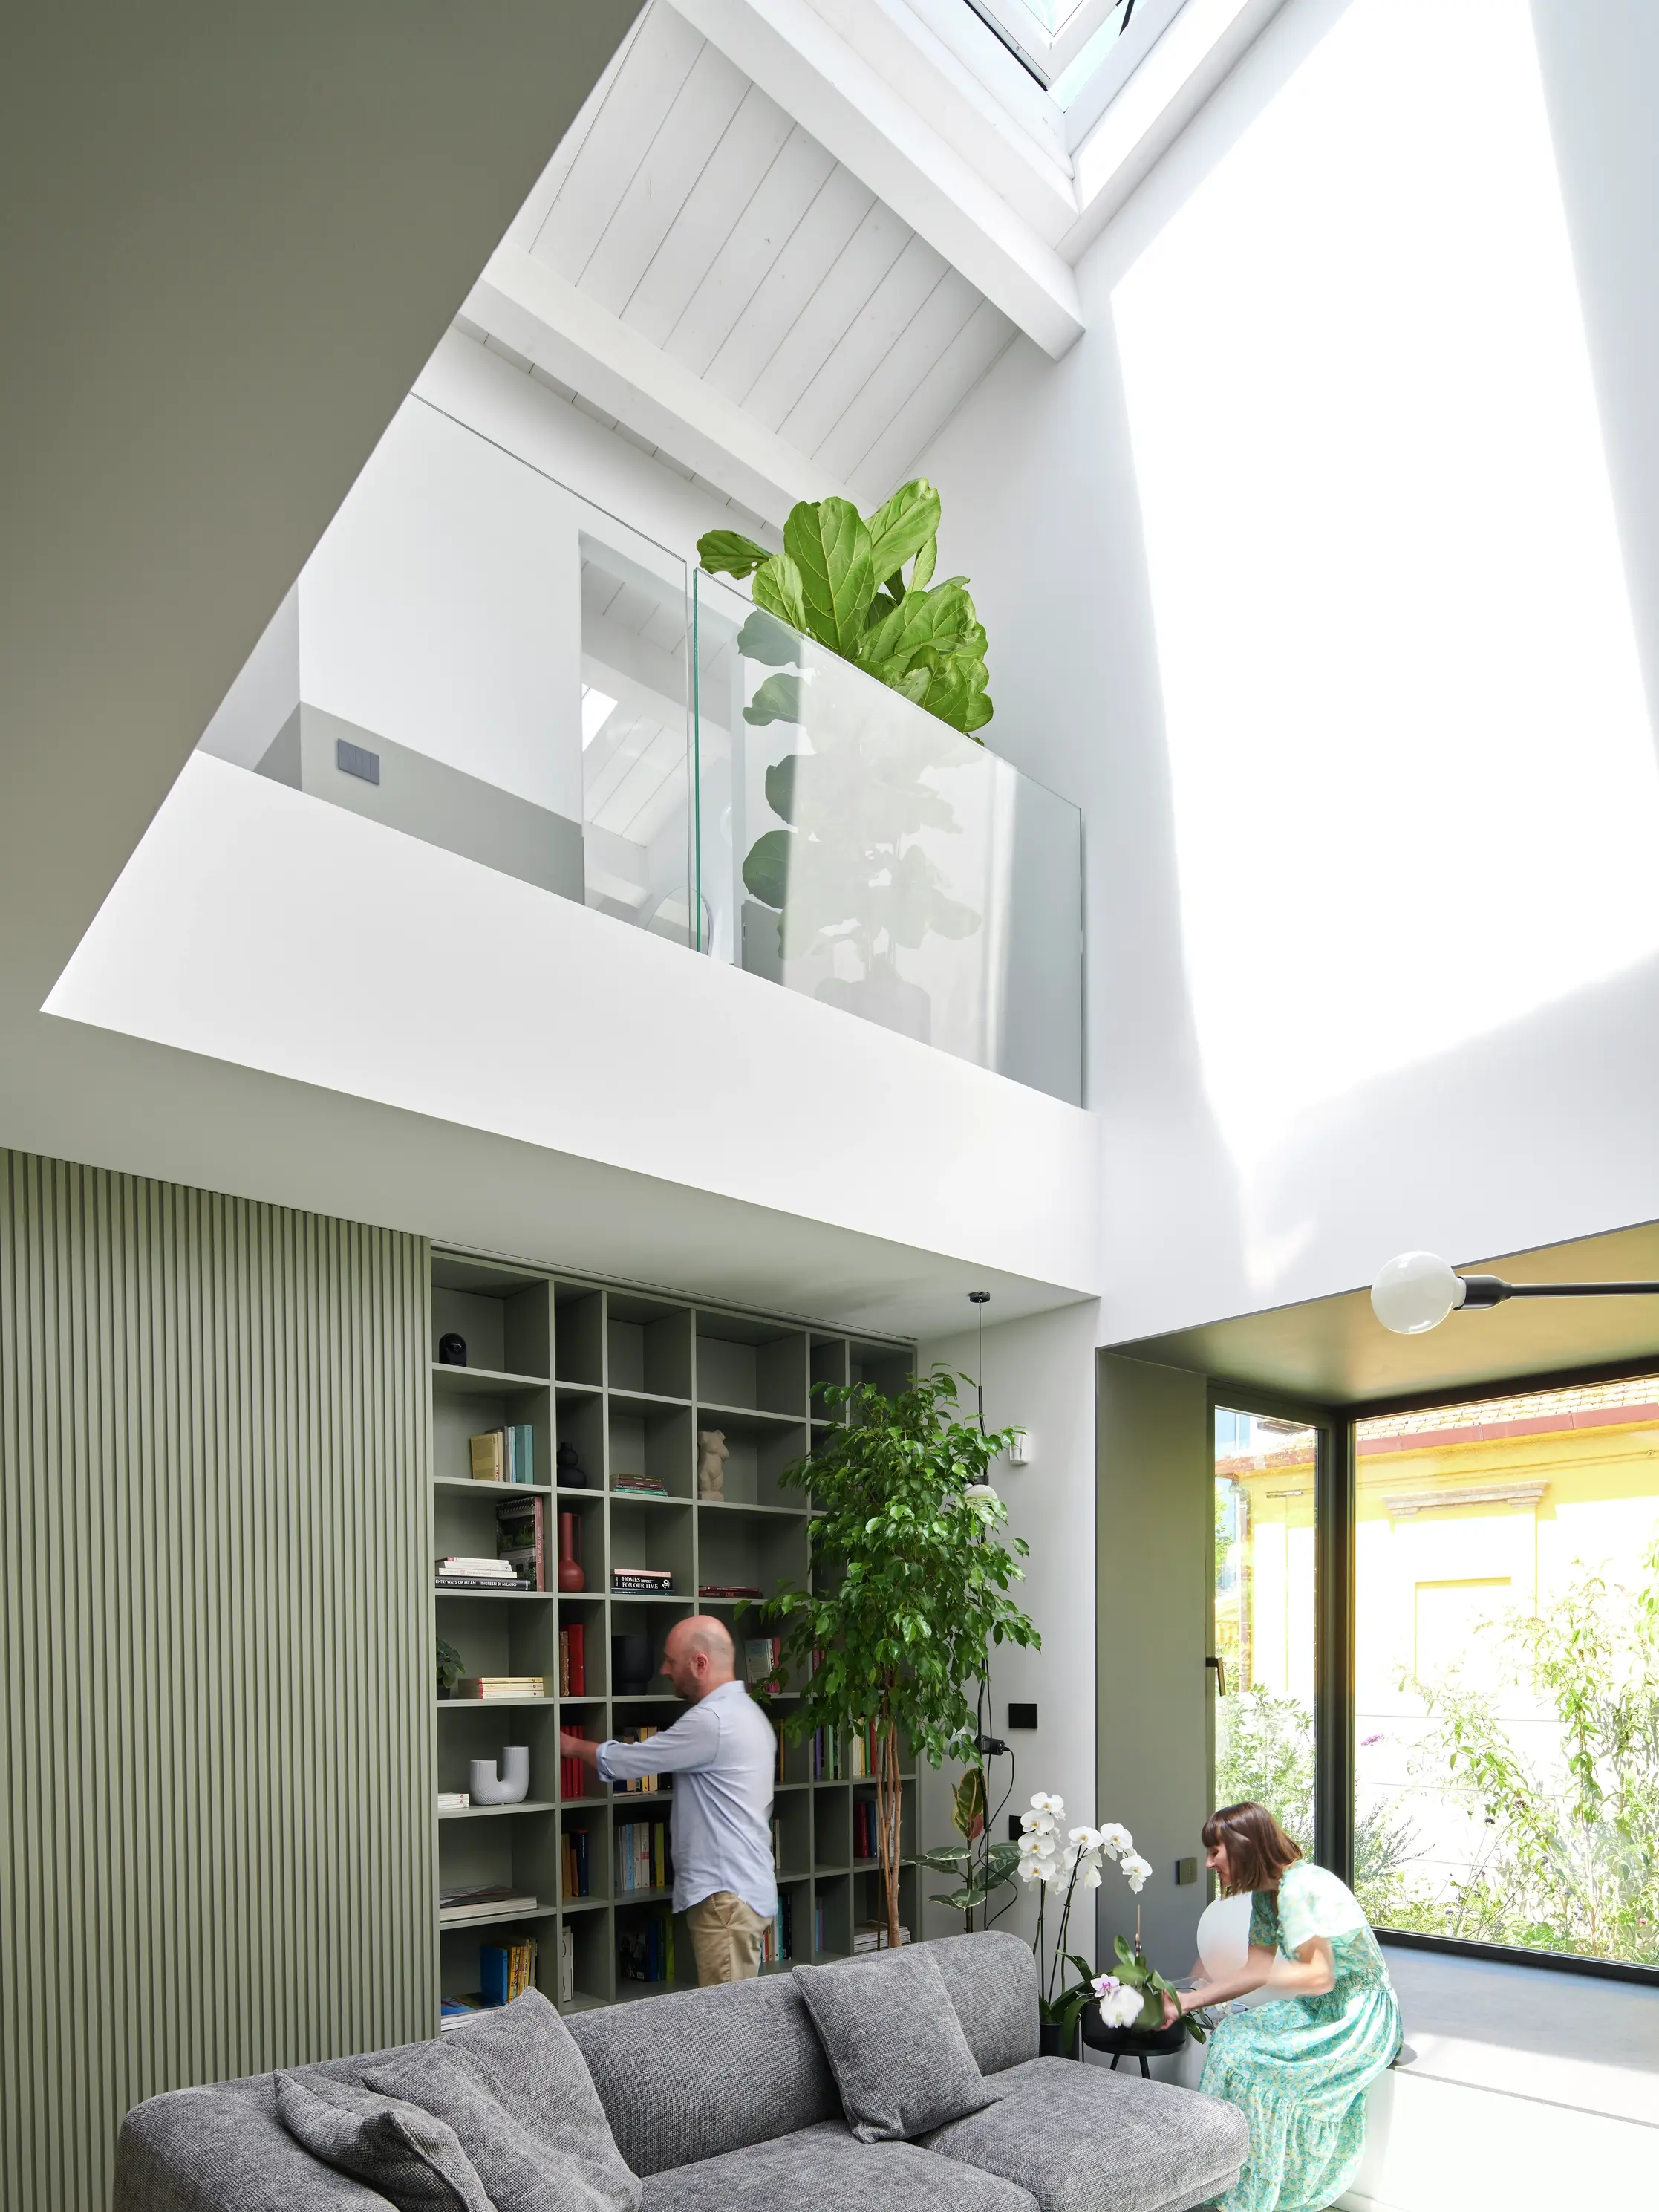 Soggiorno moderno con luce naturale proveniente da una finestra per tetti VELUX, libreria e vista sul giardino.